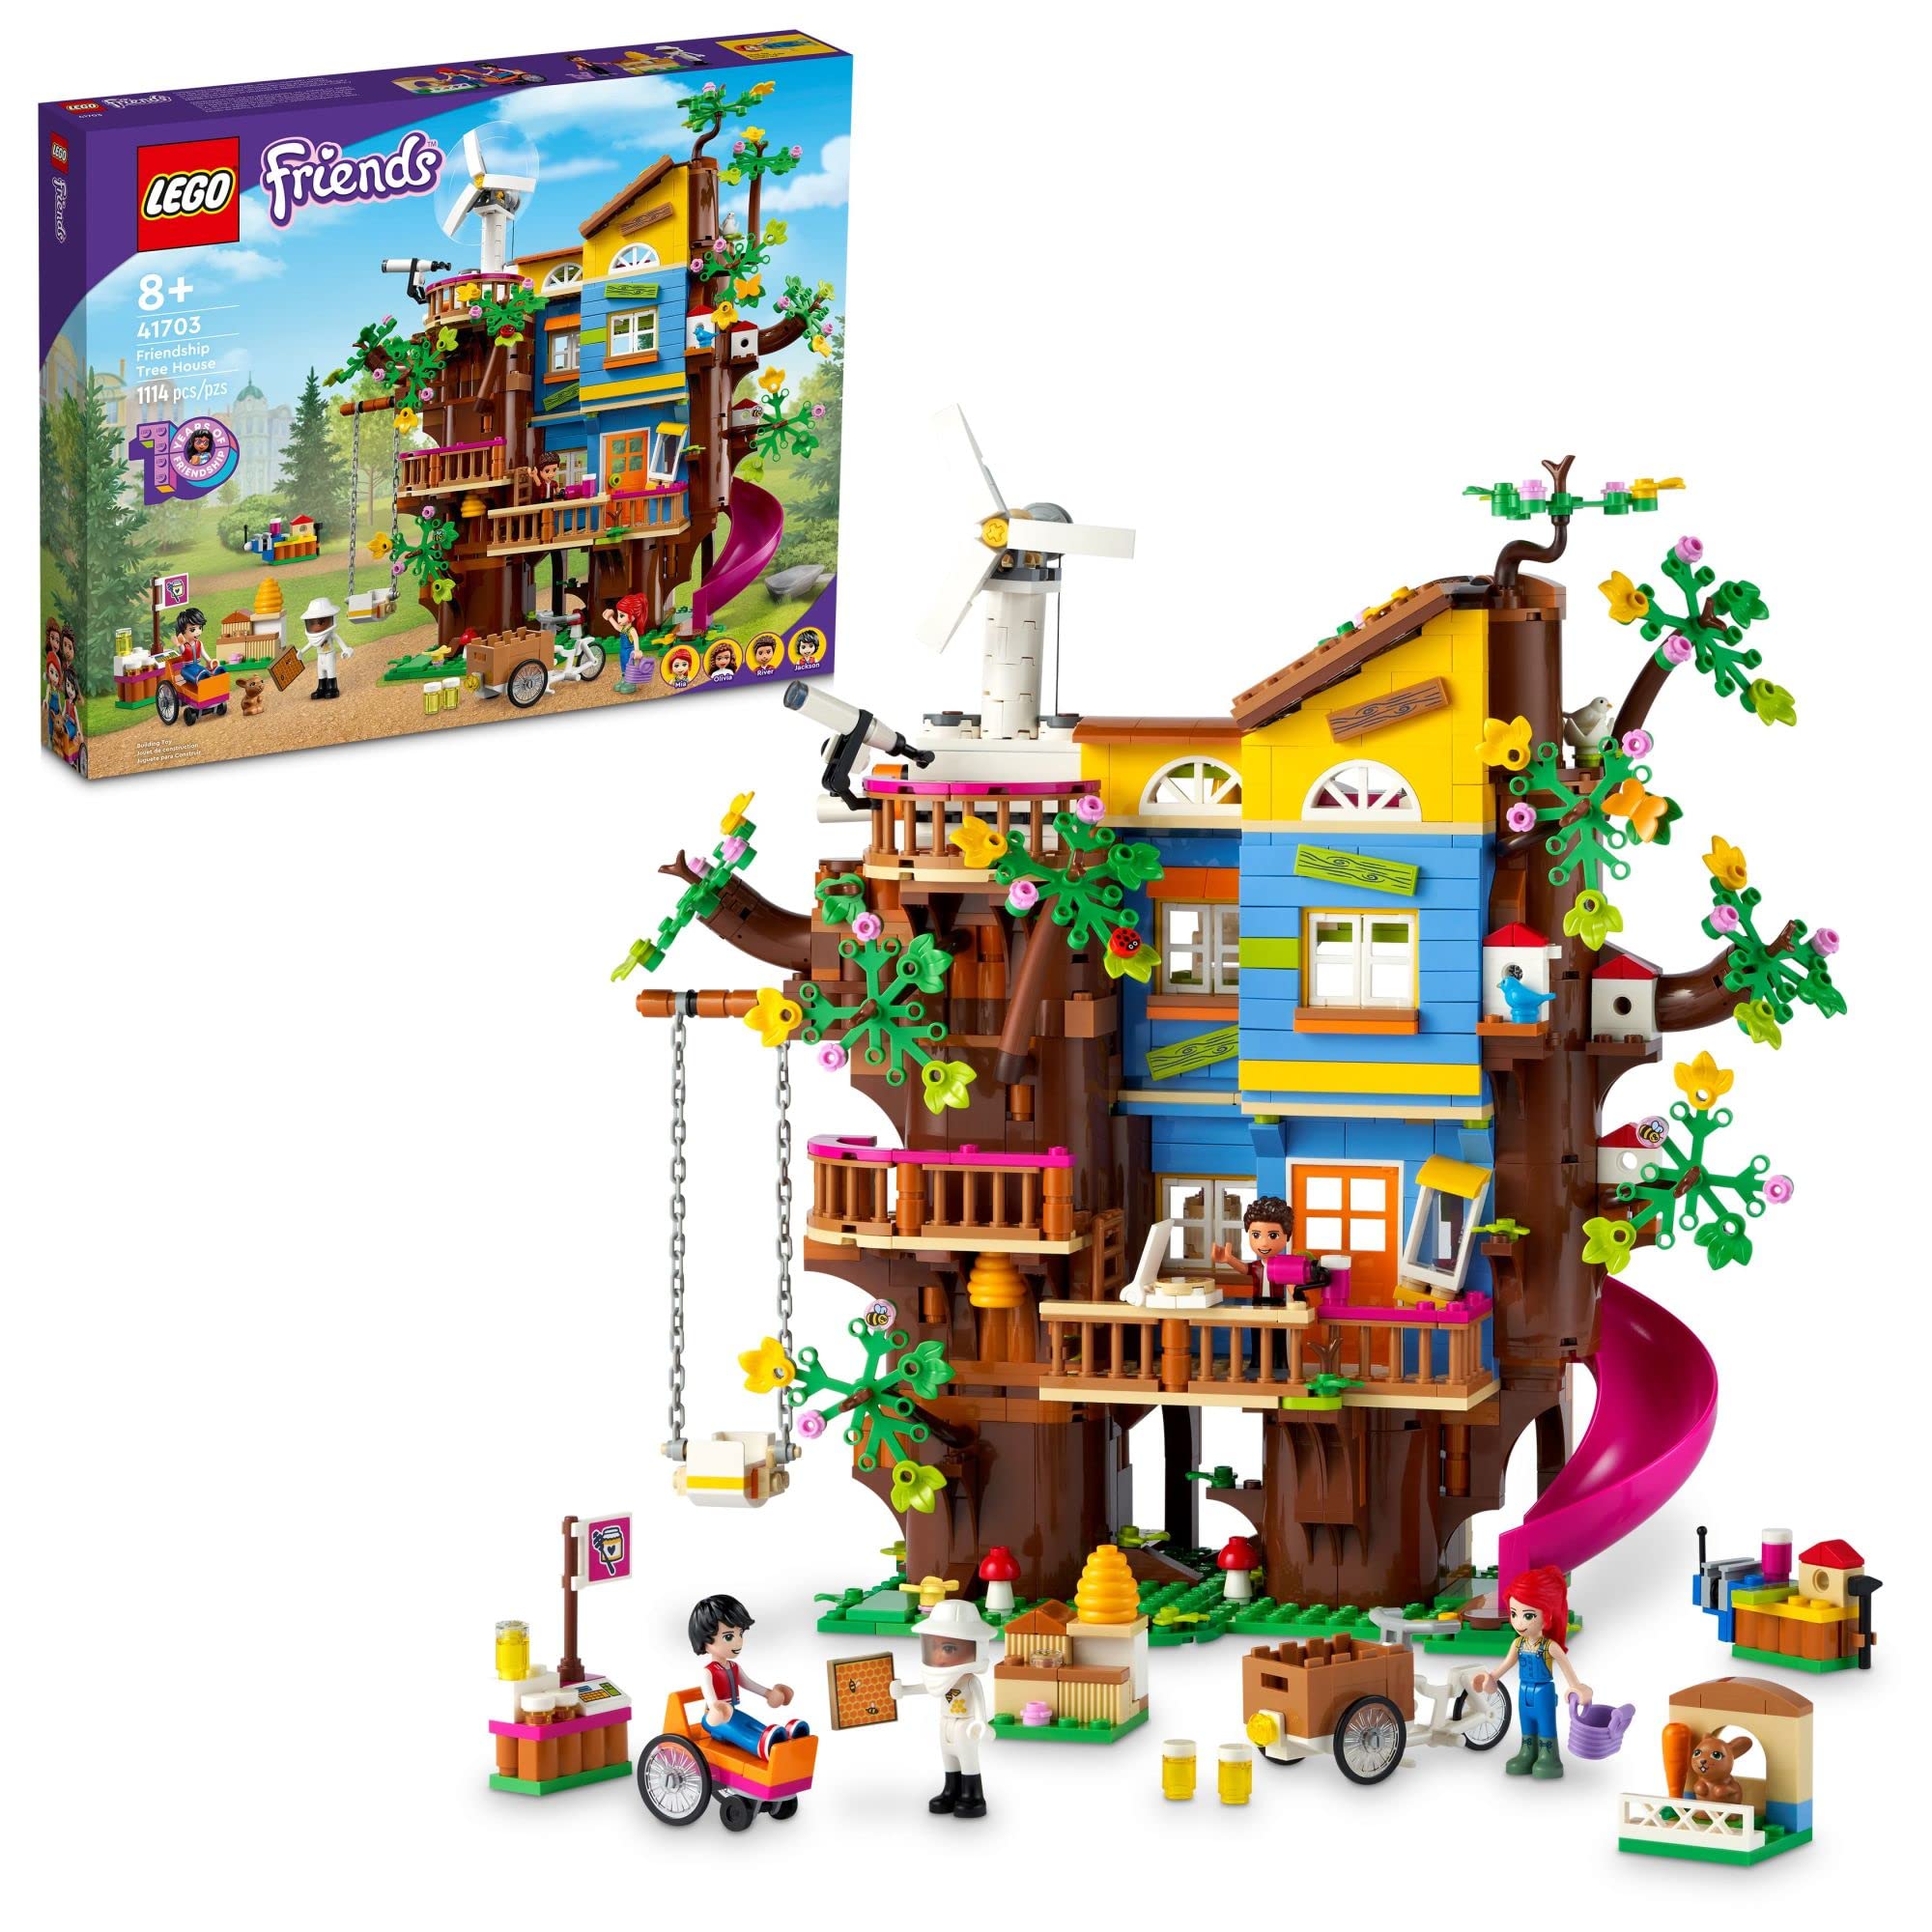 LEGO Casa na Árvore da Amizade para Amigos 41703 Kit de...